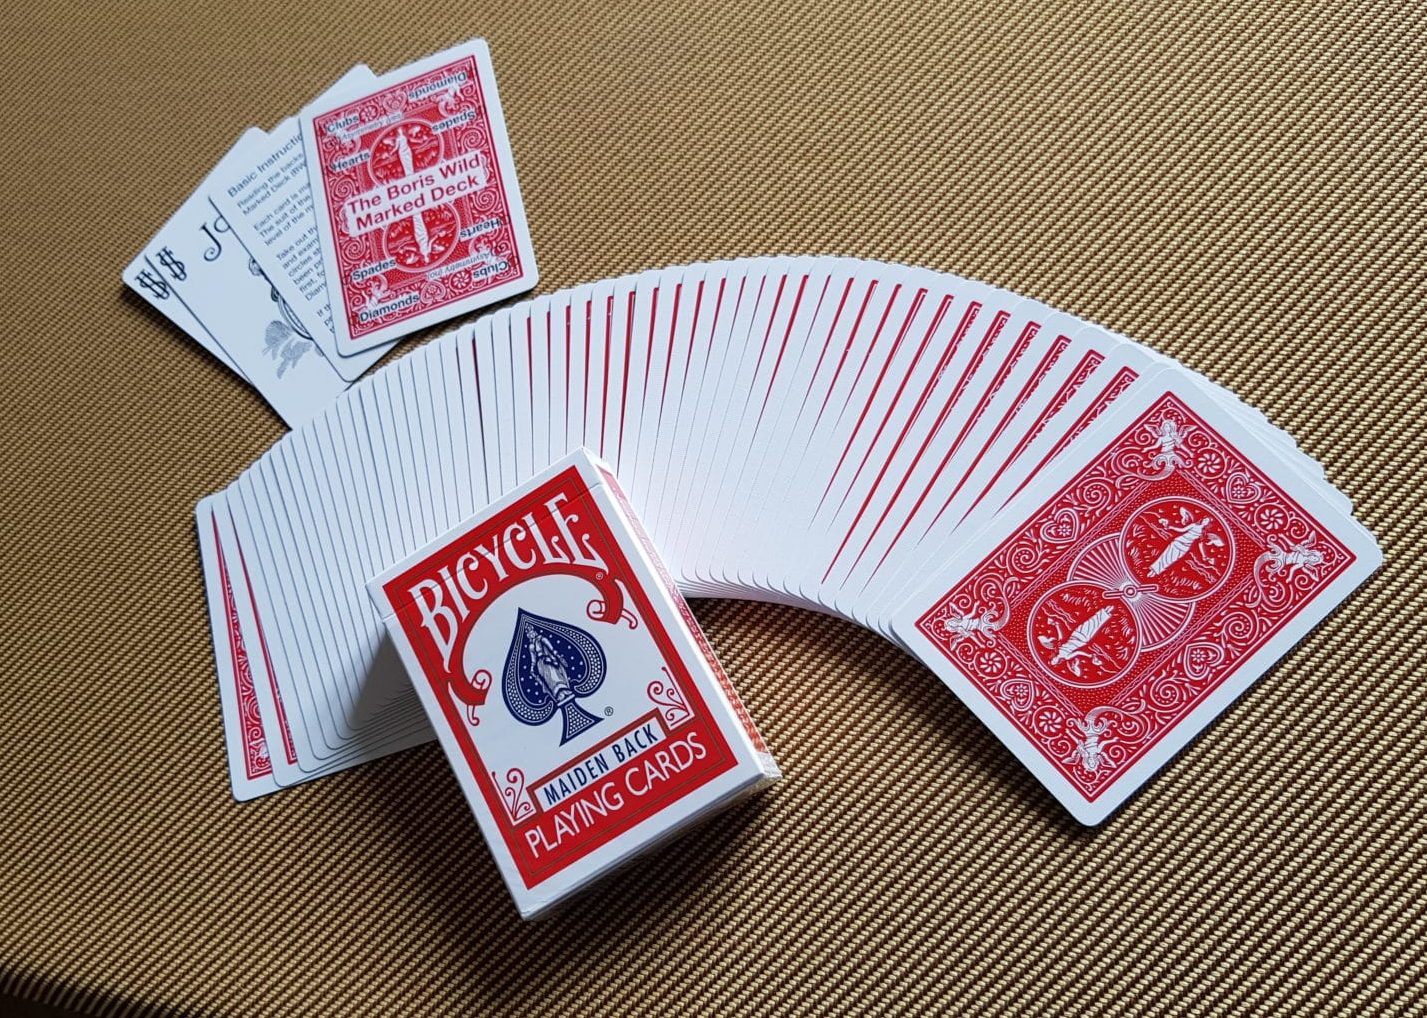 Jeu de cartes traditionnel Bicycle, taille standard pour le poker paquet de  1, 12 ans et plus